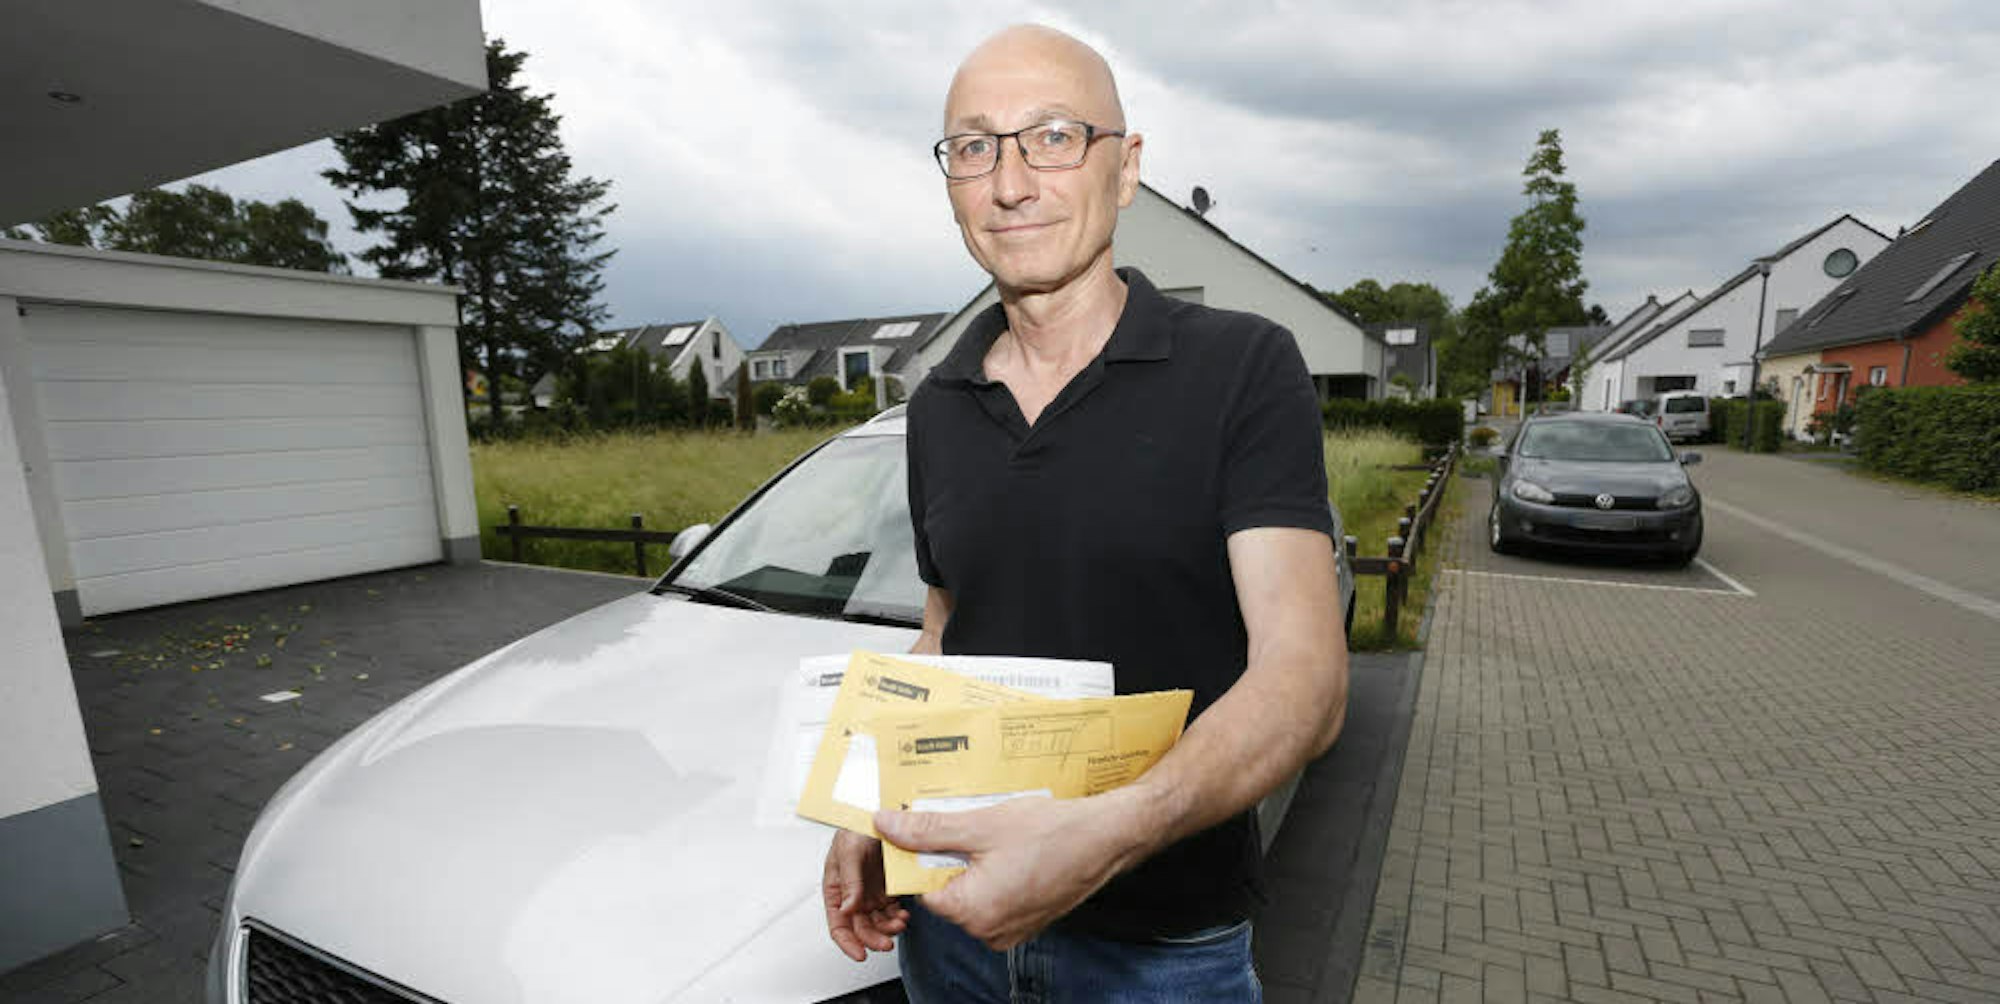 Helmut Krevet streitet vor Gericht gegen den Autohändler, weil sein Wagen zu viel verbraucht.